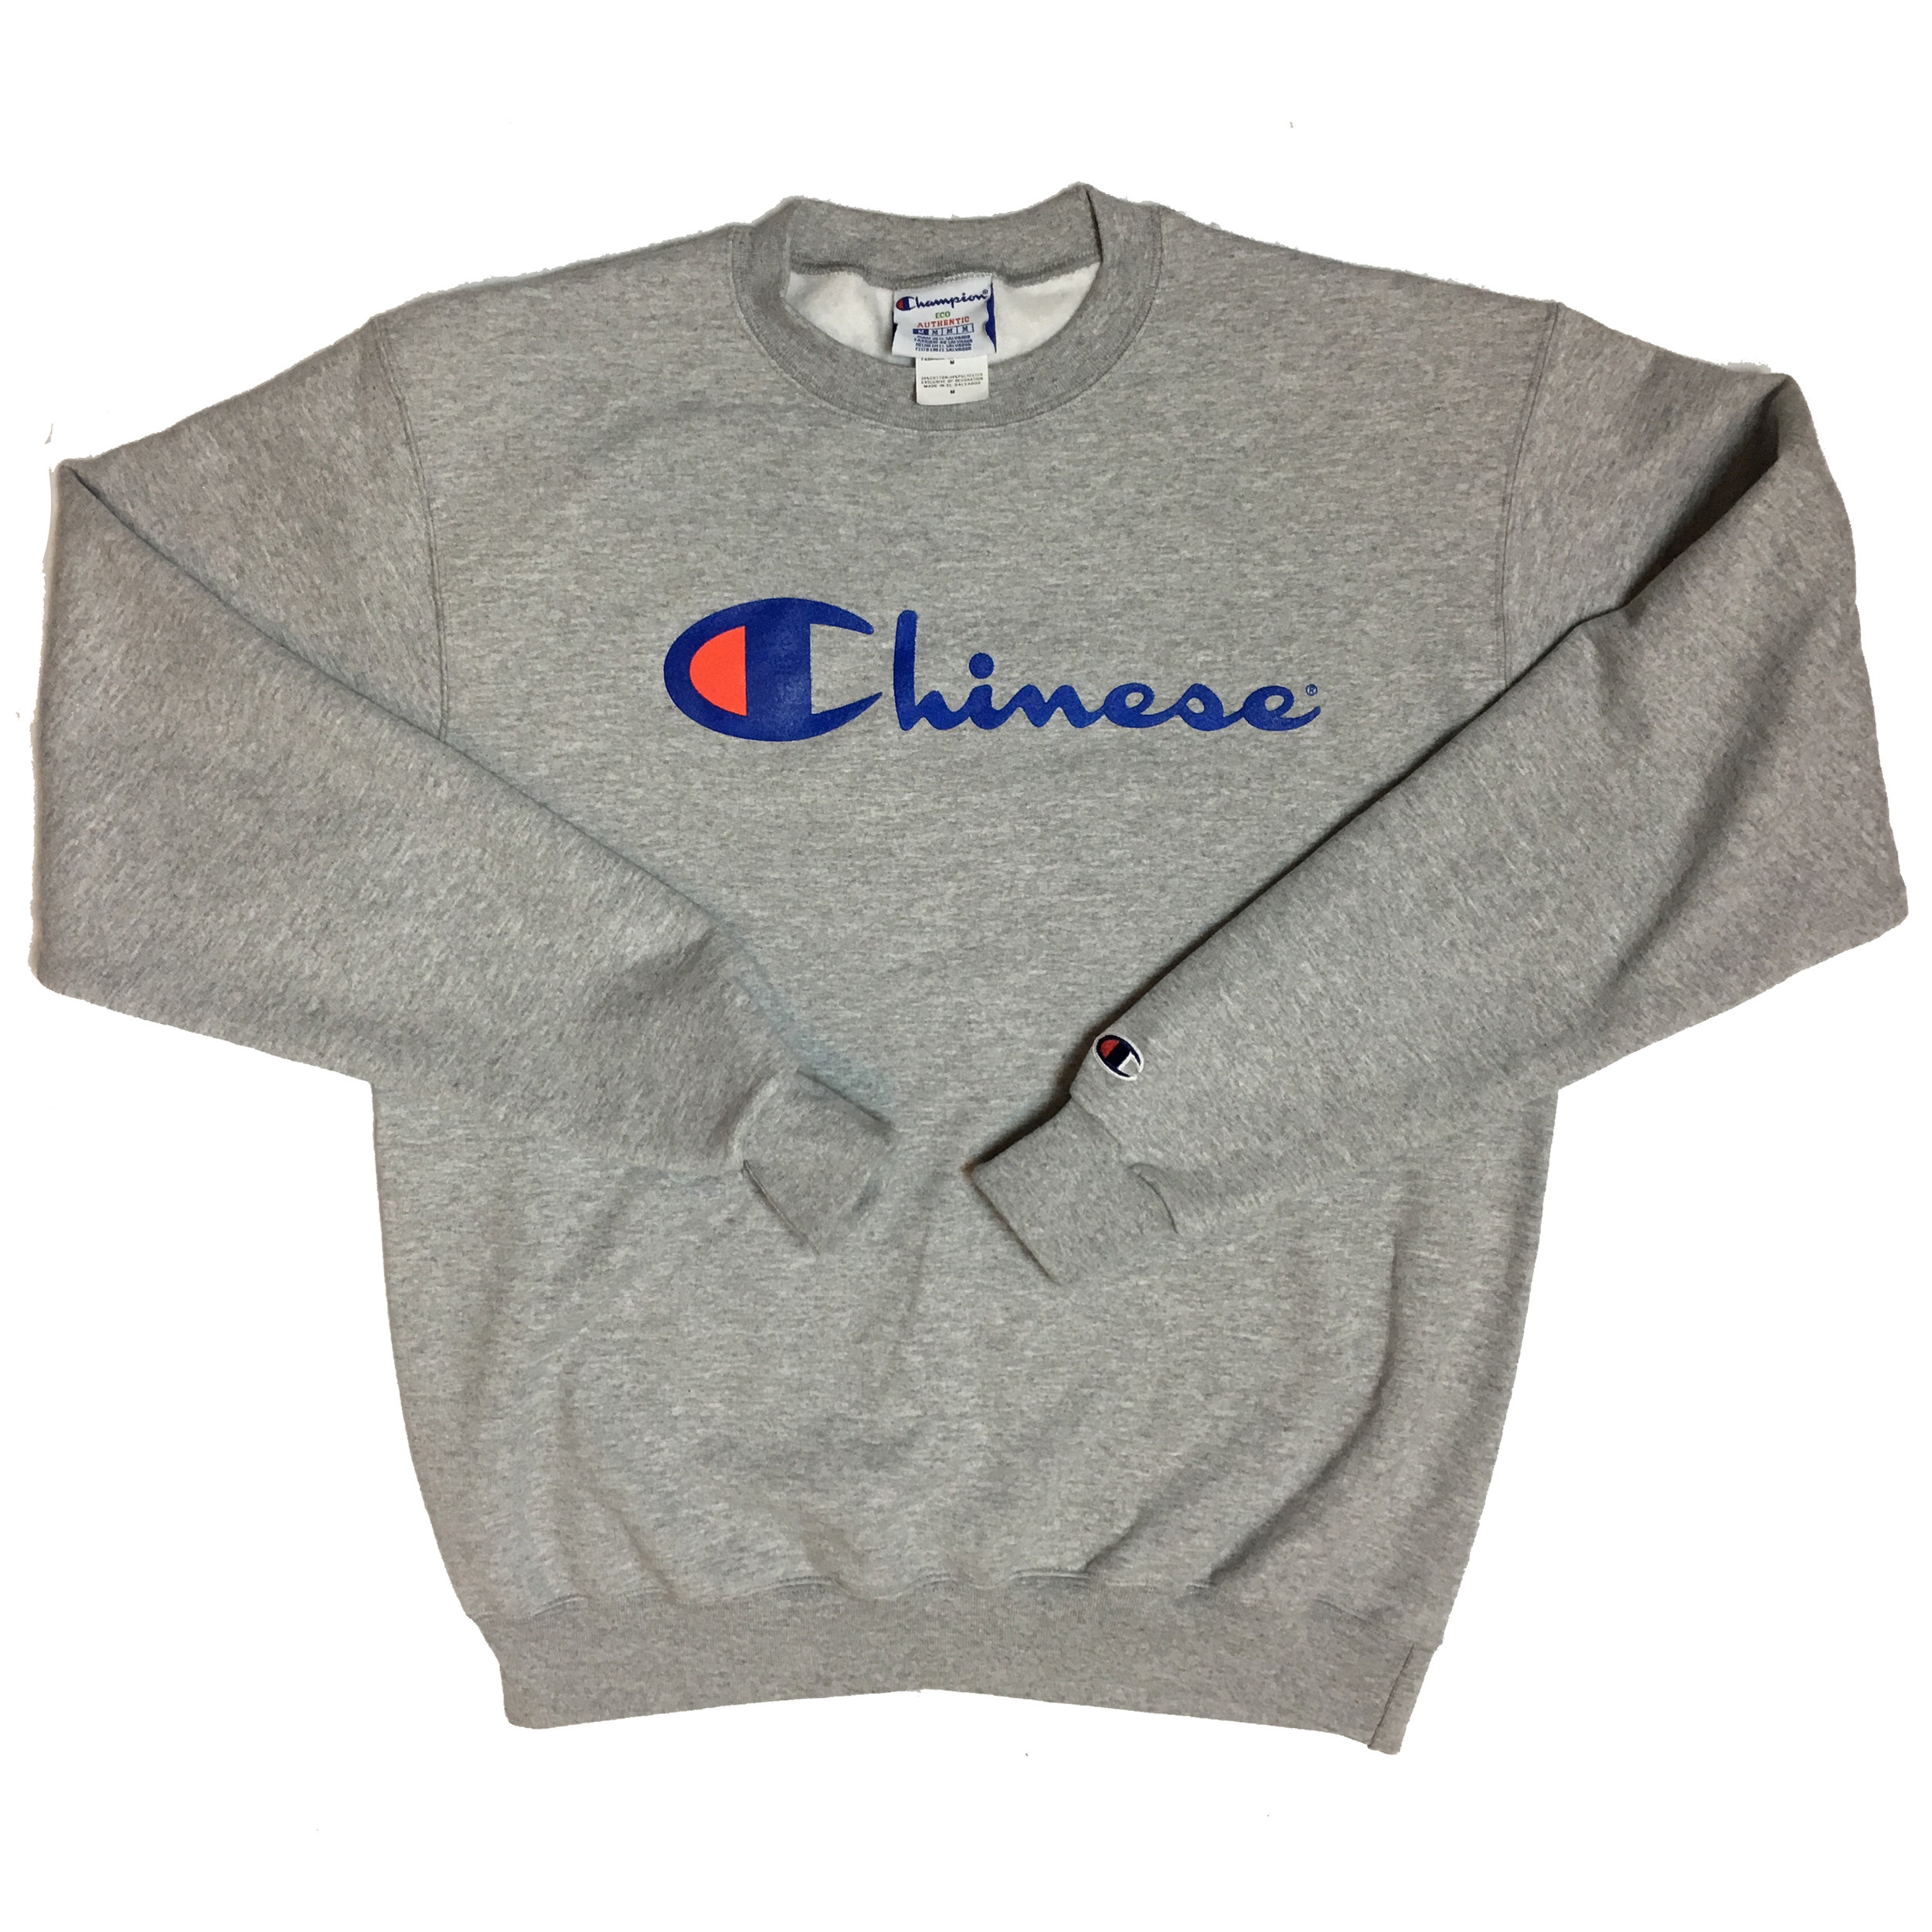 chinese champion sweater amazon